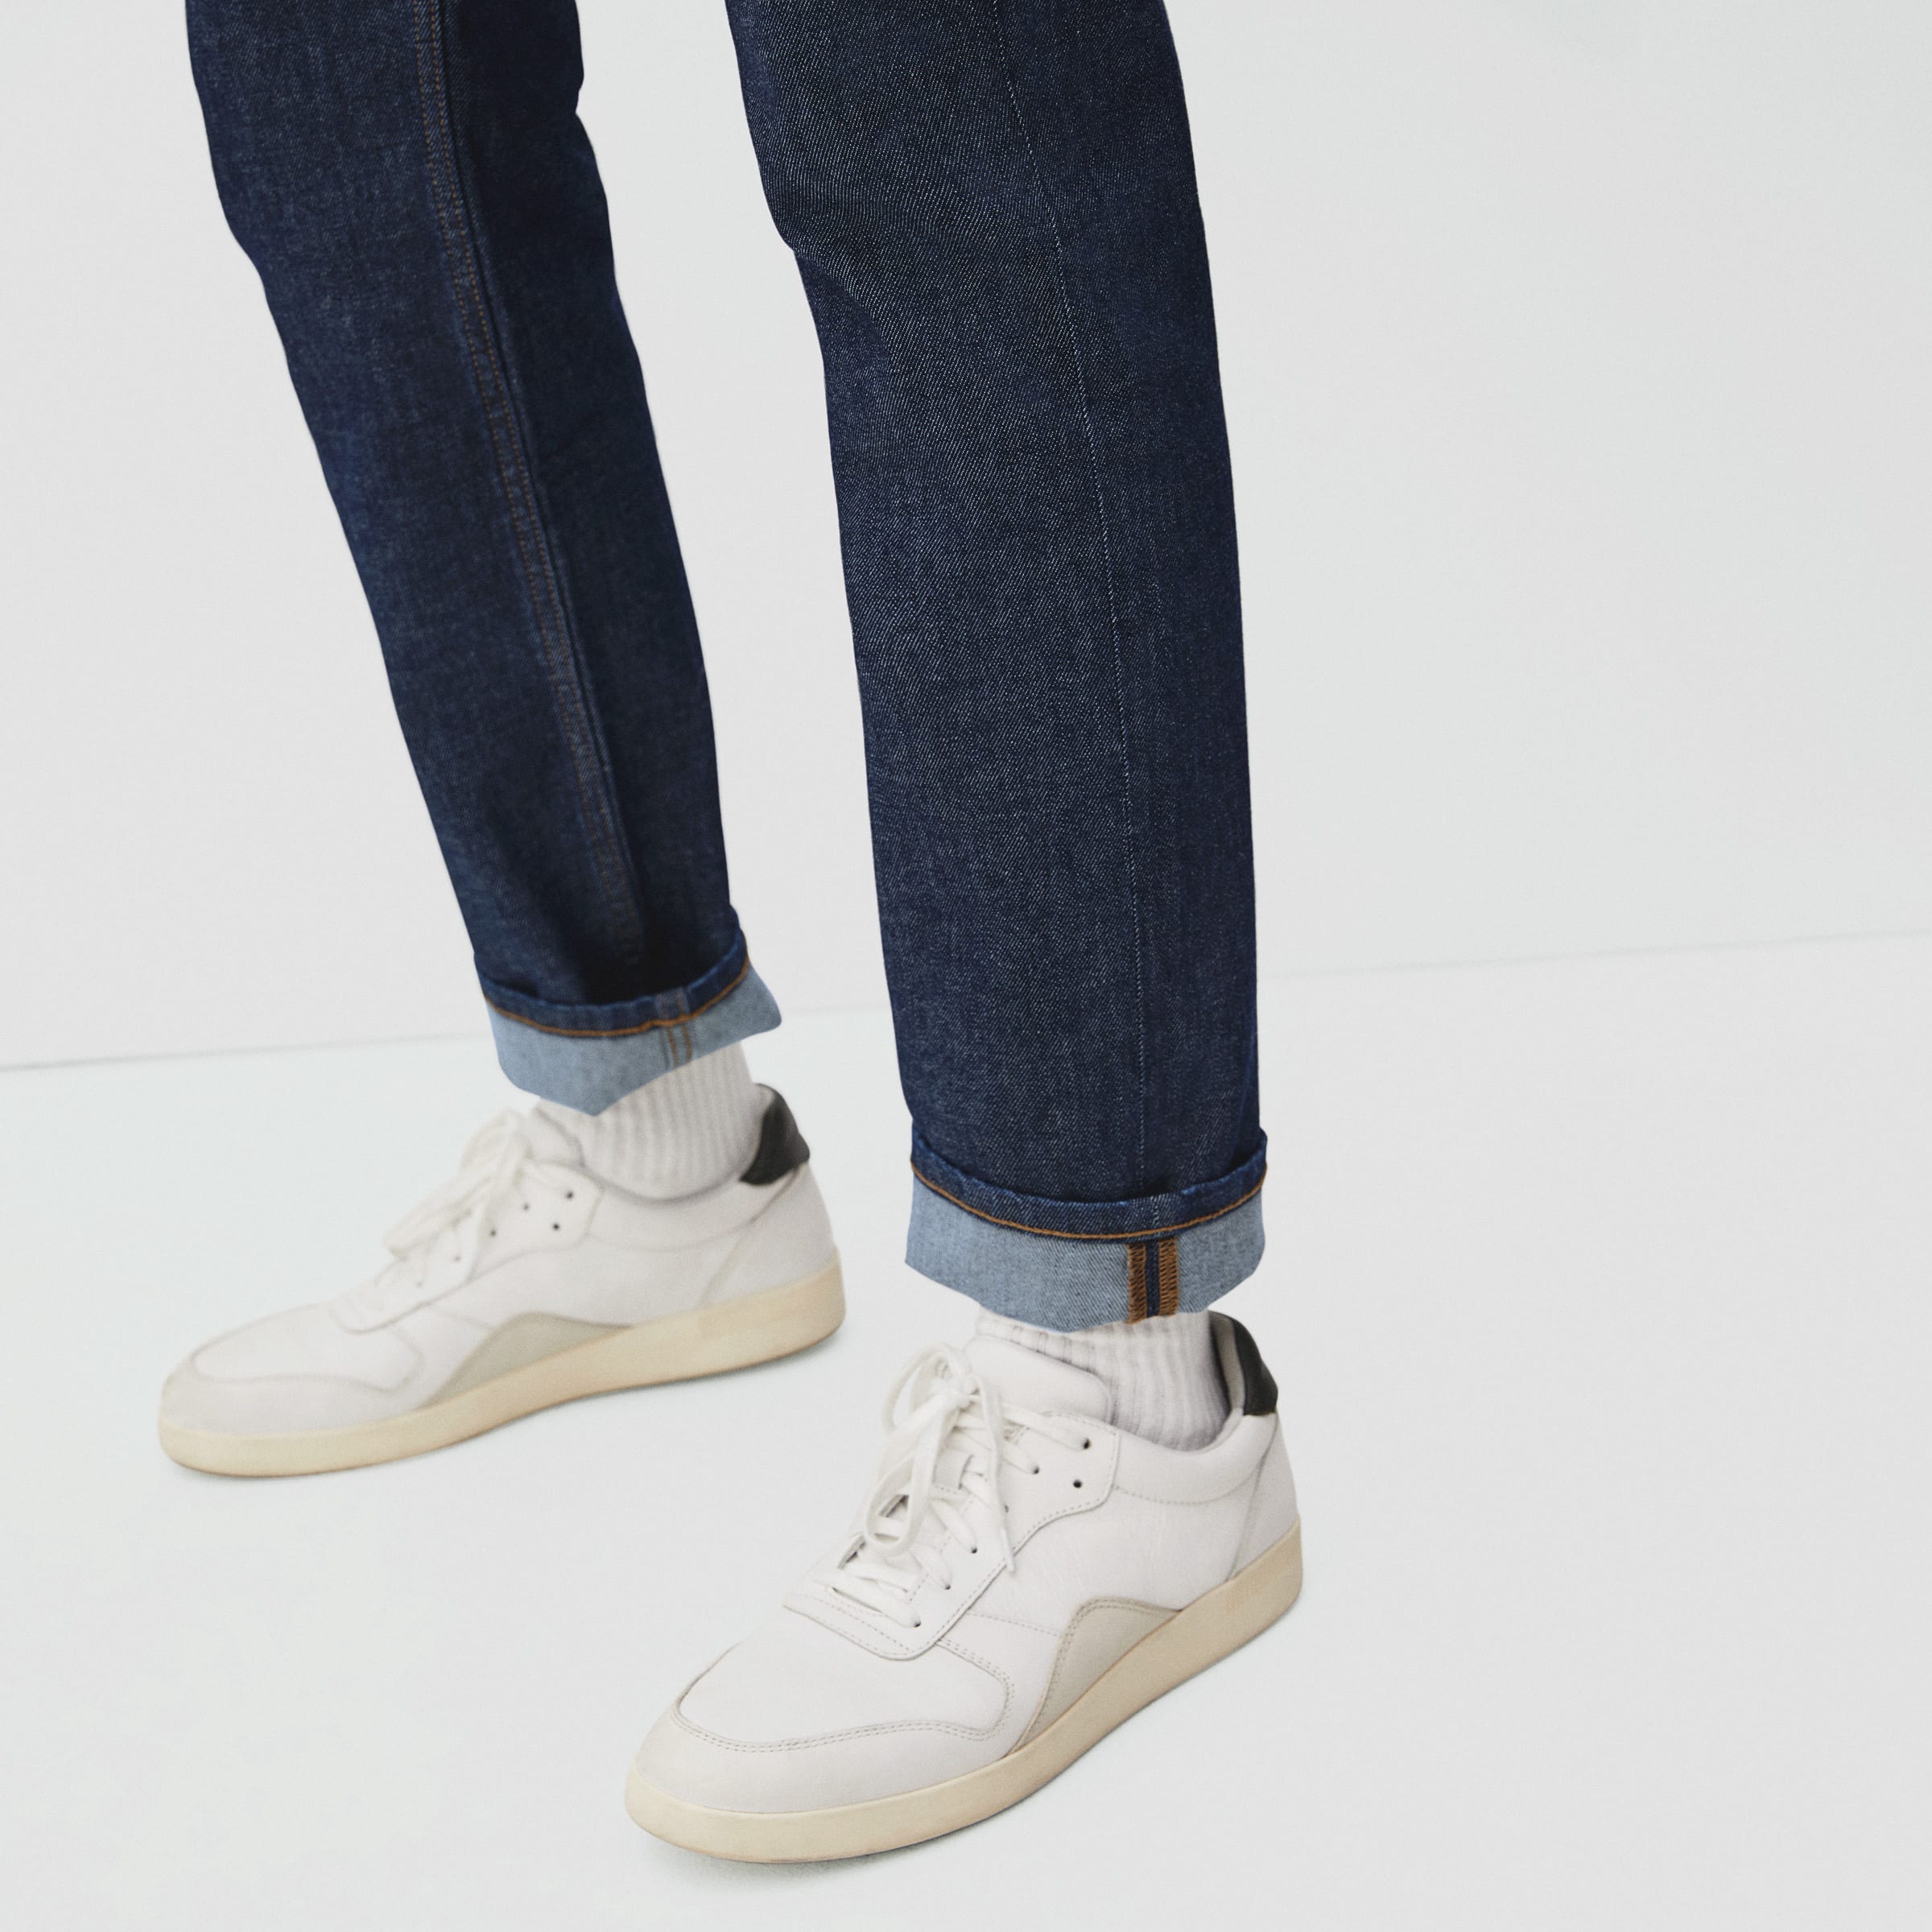 Slim Stretch Denim Trousers - Ready-to-Wear 1A5W14